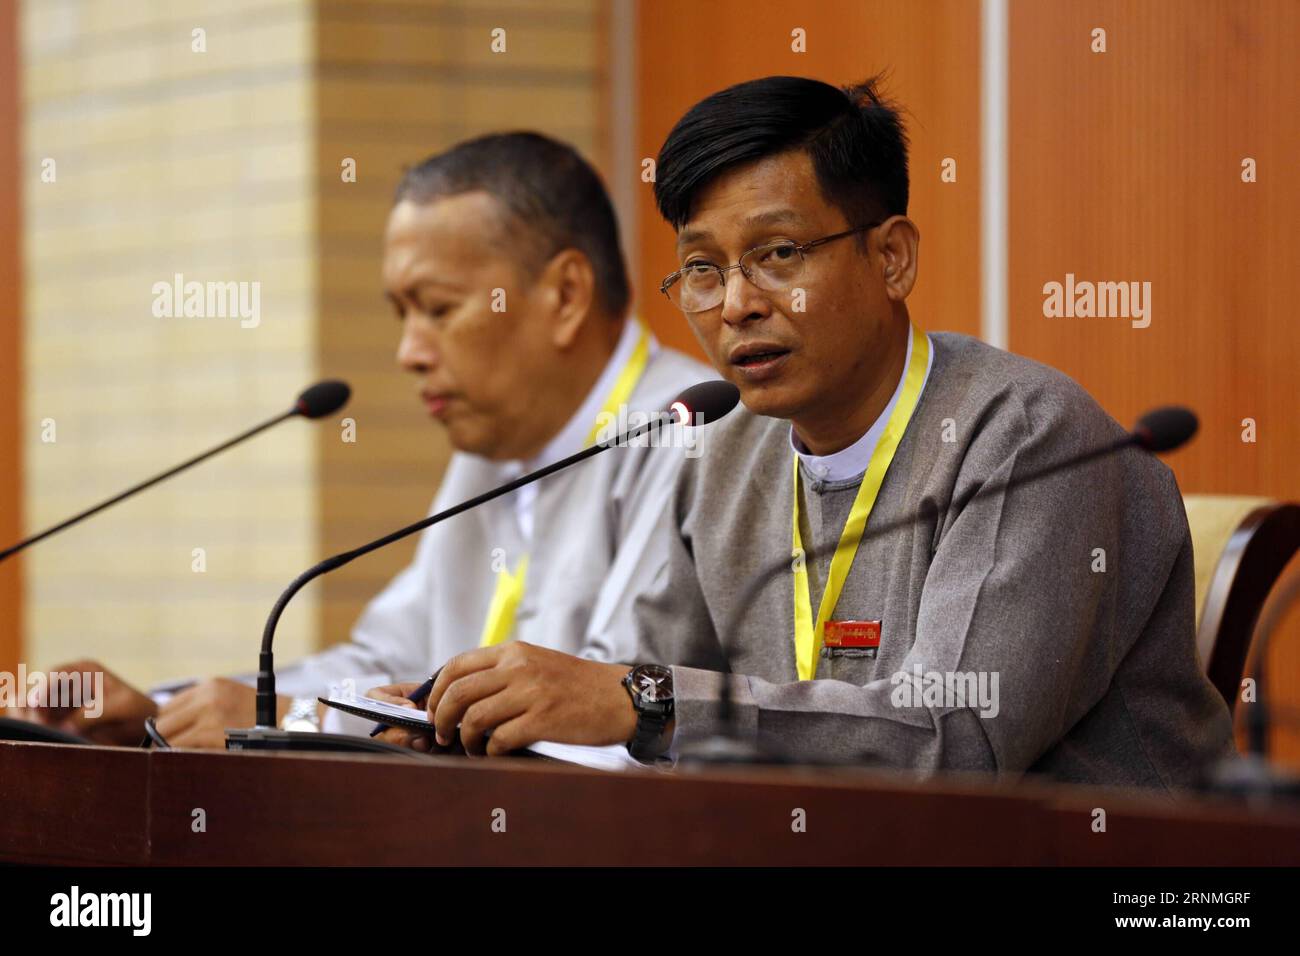 (170528) -- NAY PYI TAW, 28. Mai 2017 -- U Zaw Htay (R), Generaldirektor des Büros des Staatsräteamts, spricht mit den Medien auf einer Pressekonferenz über die Sitzung des Gemischten Ausschusses für den Friedensdialog der Union (UPDJC) während der zweiten Sitzung der Panglong-Friedenskonferenz des 21. Jahrhunderts in Myanmar in Nay Pyi Taw, Myanmar, am 28. Mai 2017. Mit einer Sitzung des Gemischten Ausschusses für den Friedensdialog der union (UPDJC) Myanmars am späten Sonntag wurde keine Einigung über die Frage der Nichtabspaltung von staaten aus der Union erzielt. U Aung) (lrz) MYANMAR-NAY PYI TAW-FRIEDENSKONFERENZ yangon PUBLICATIONxNOTxINxCHN Stockfoto